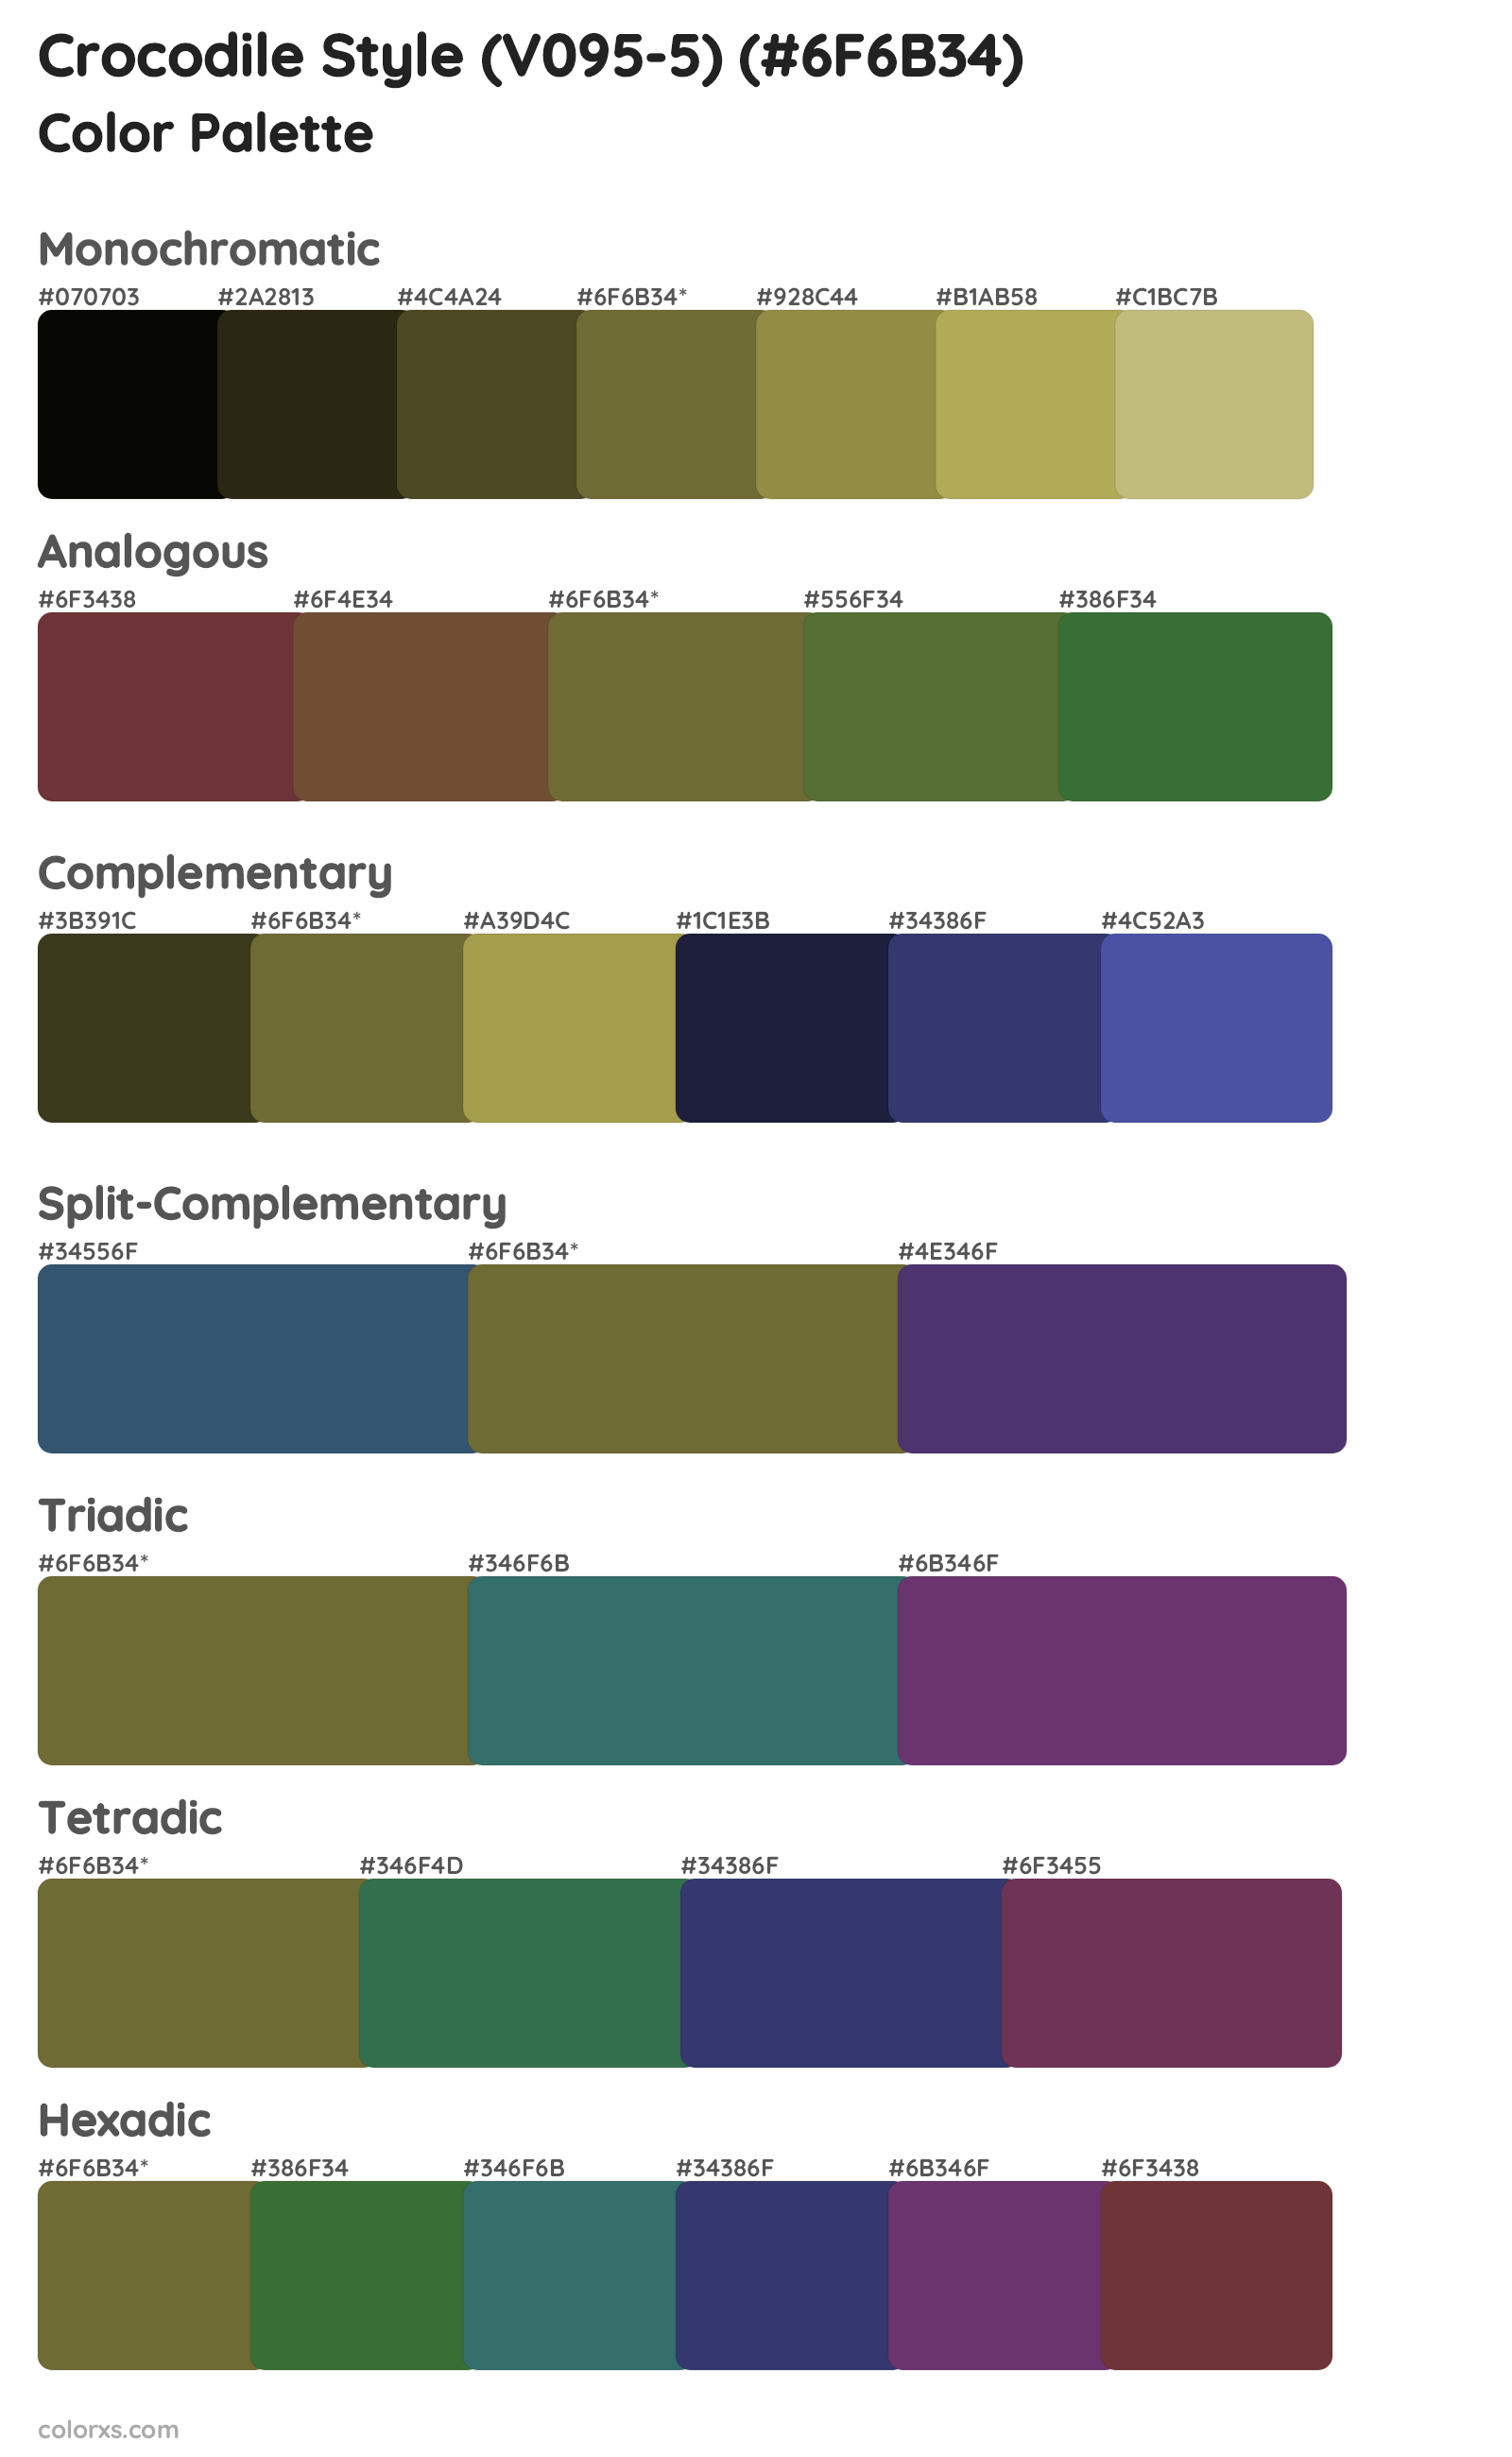 Crocodile Style (V095-5) Color Scheme Palettes